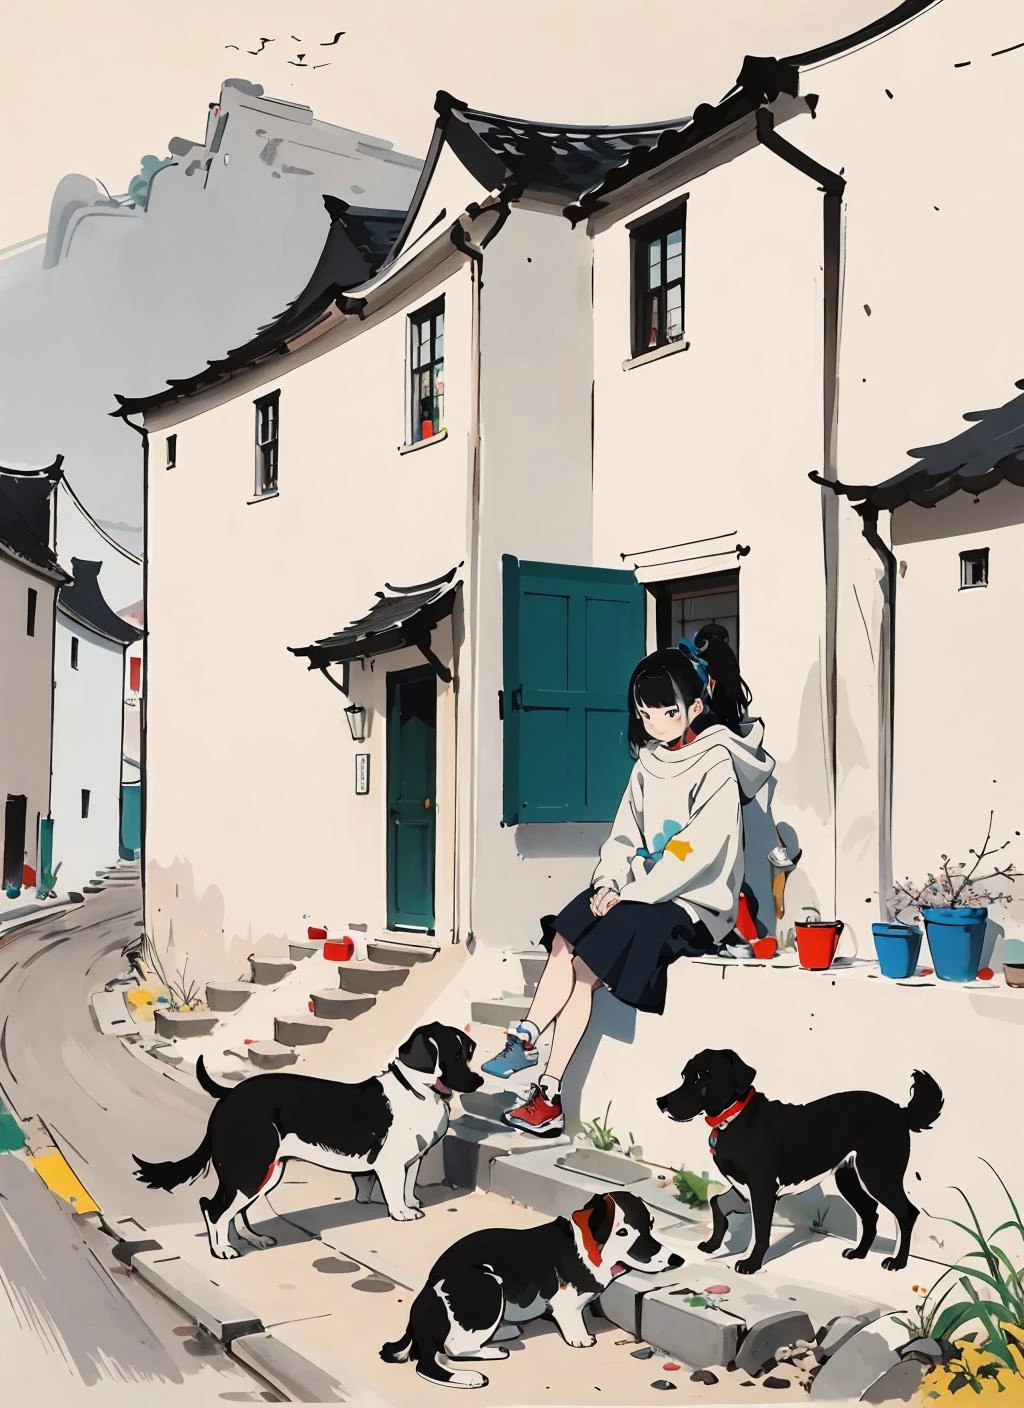 Obra de arte,melhor qualidade,wuguanzhong,1 garota,cachorro,